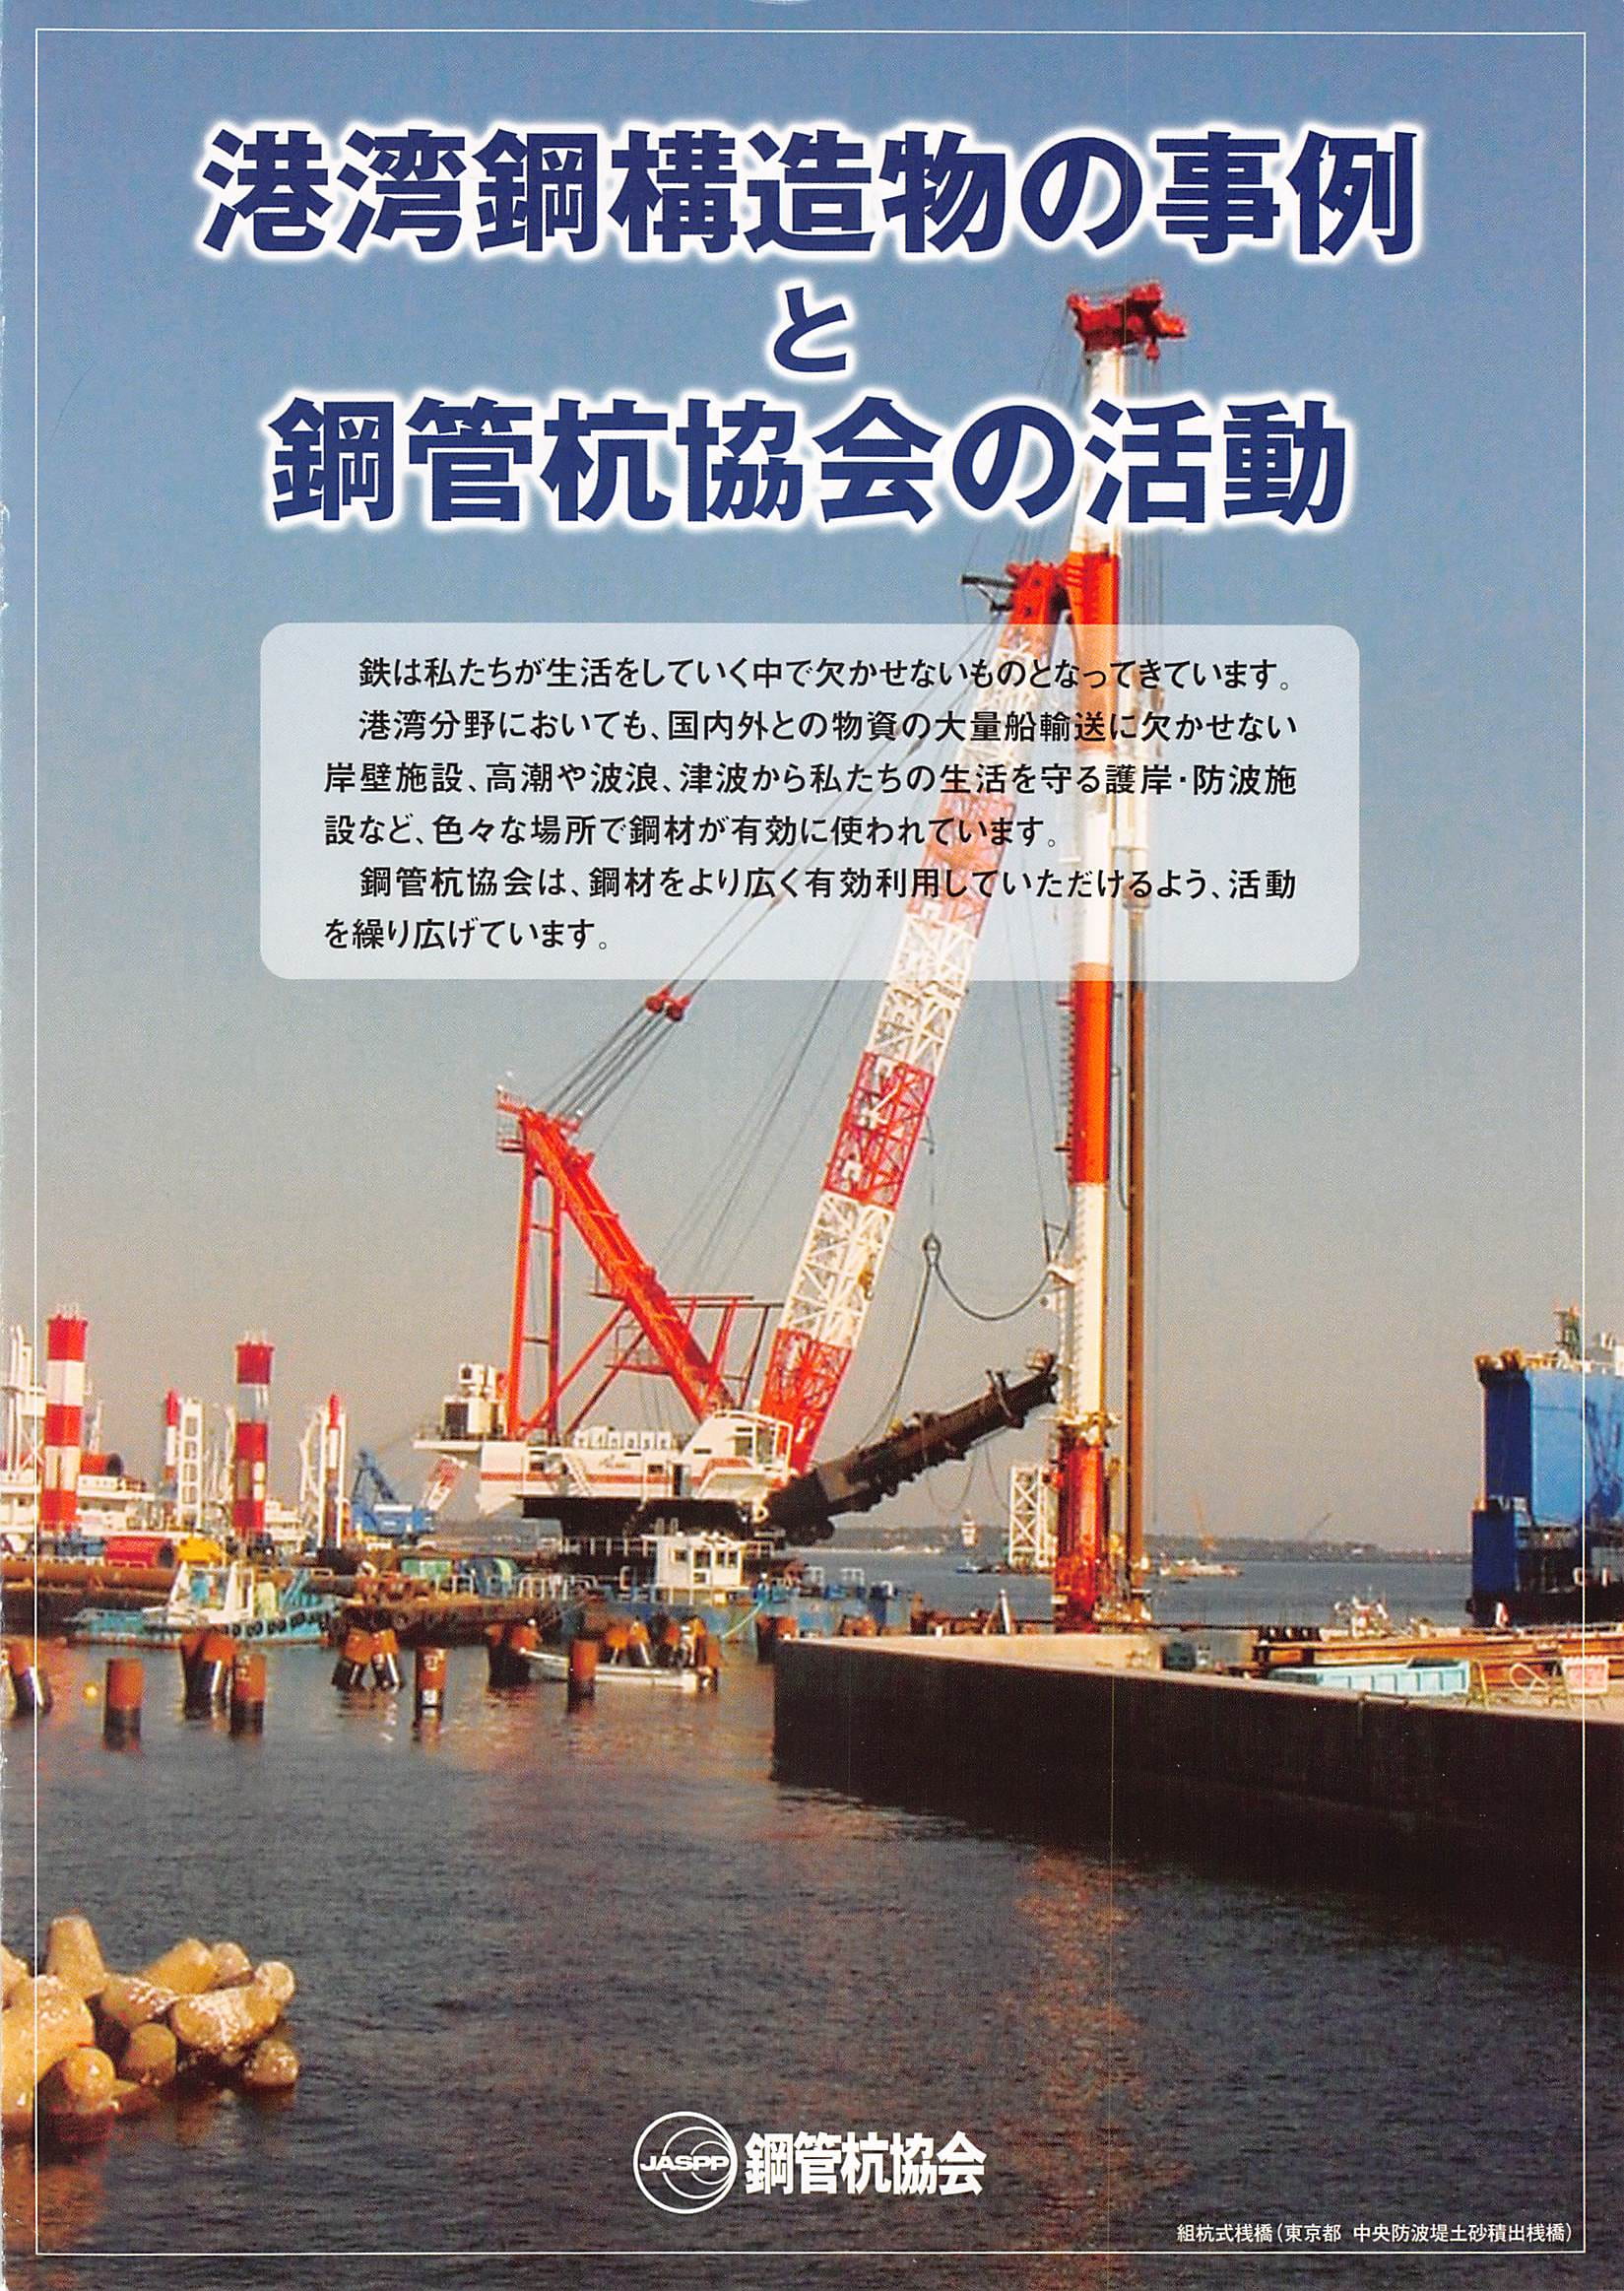 港湾鋼構造物の事例と鋼管杭協会の活動